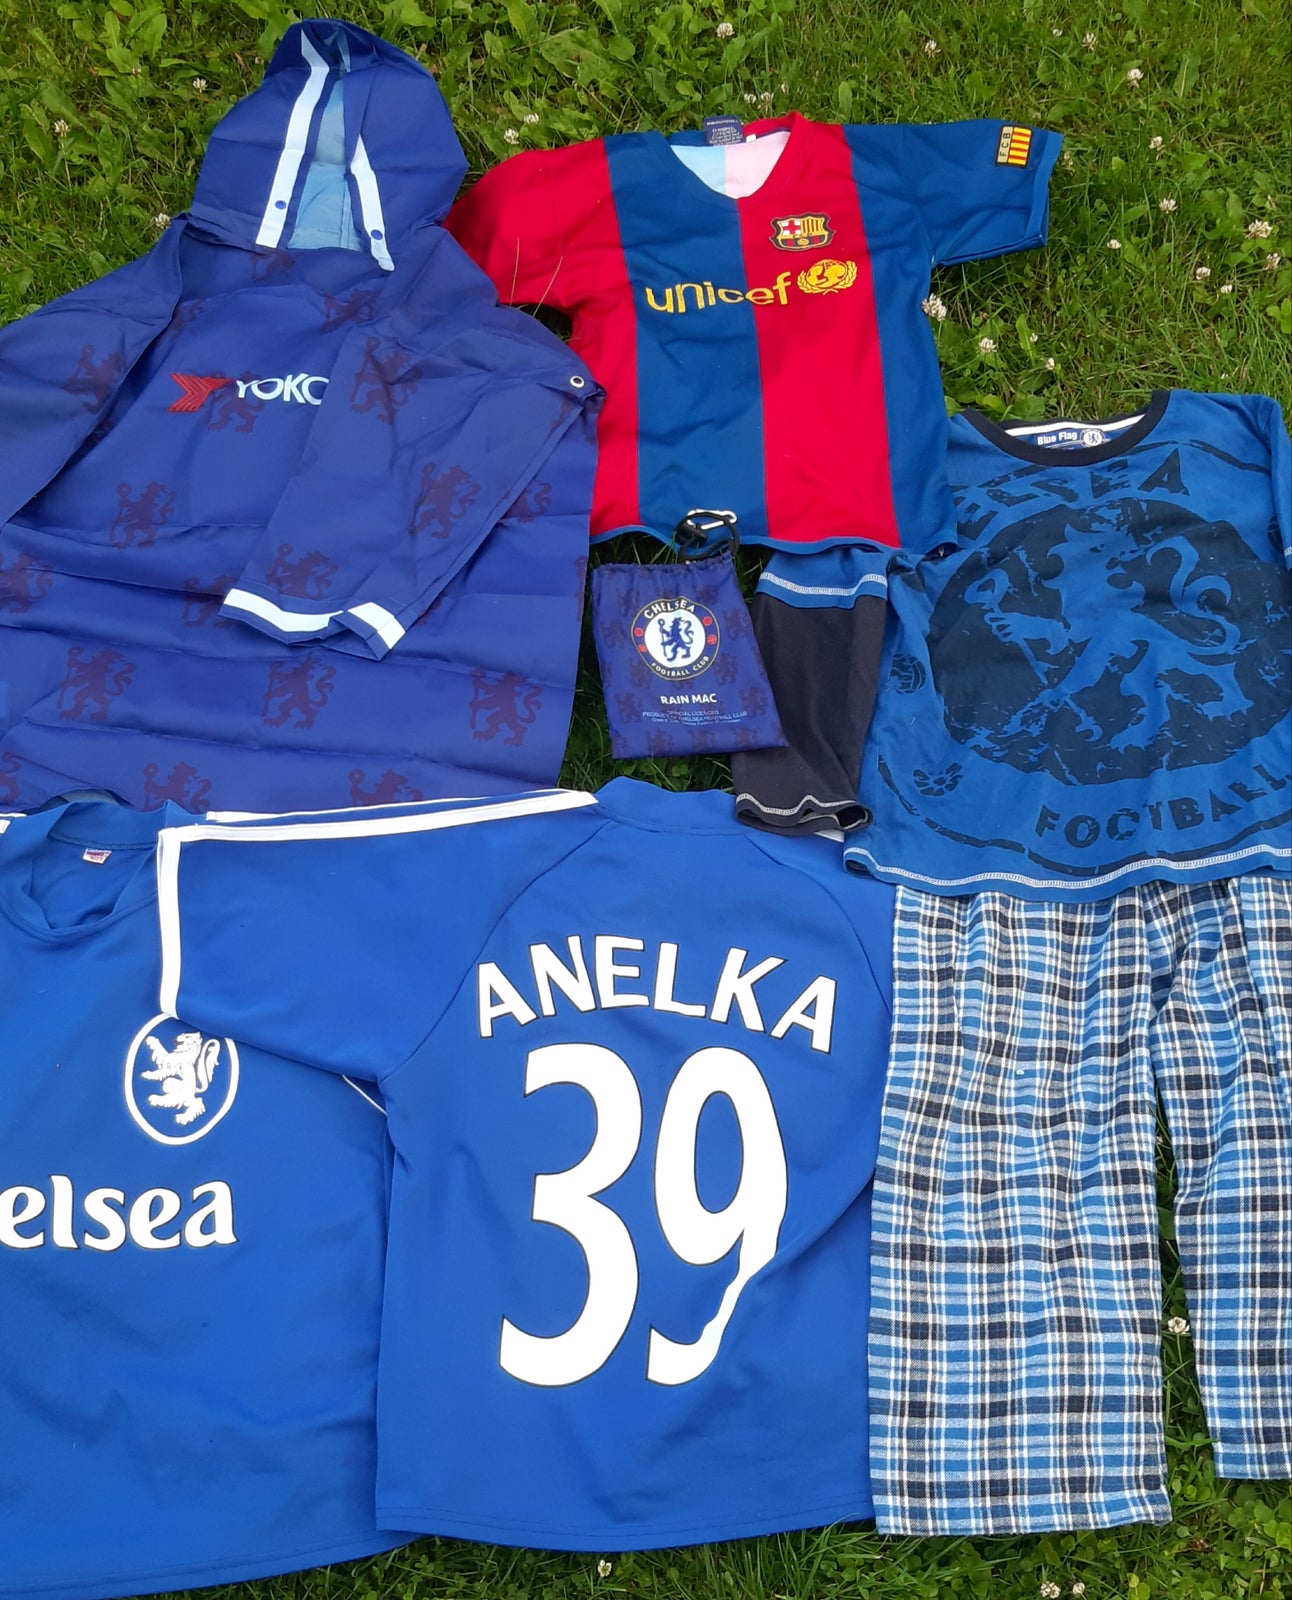 Sportstøj, Fodboldtrøje / fodboldtøj, Chelsea FC / BCN osv – dba.dk – og Salg af Nyt og Brugt